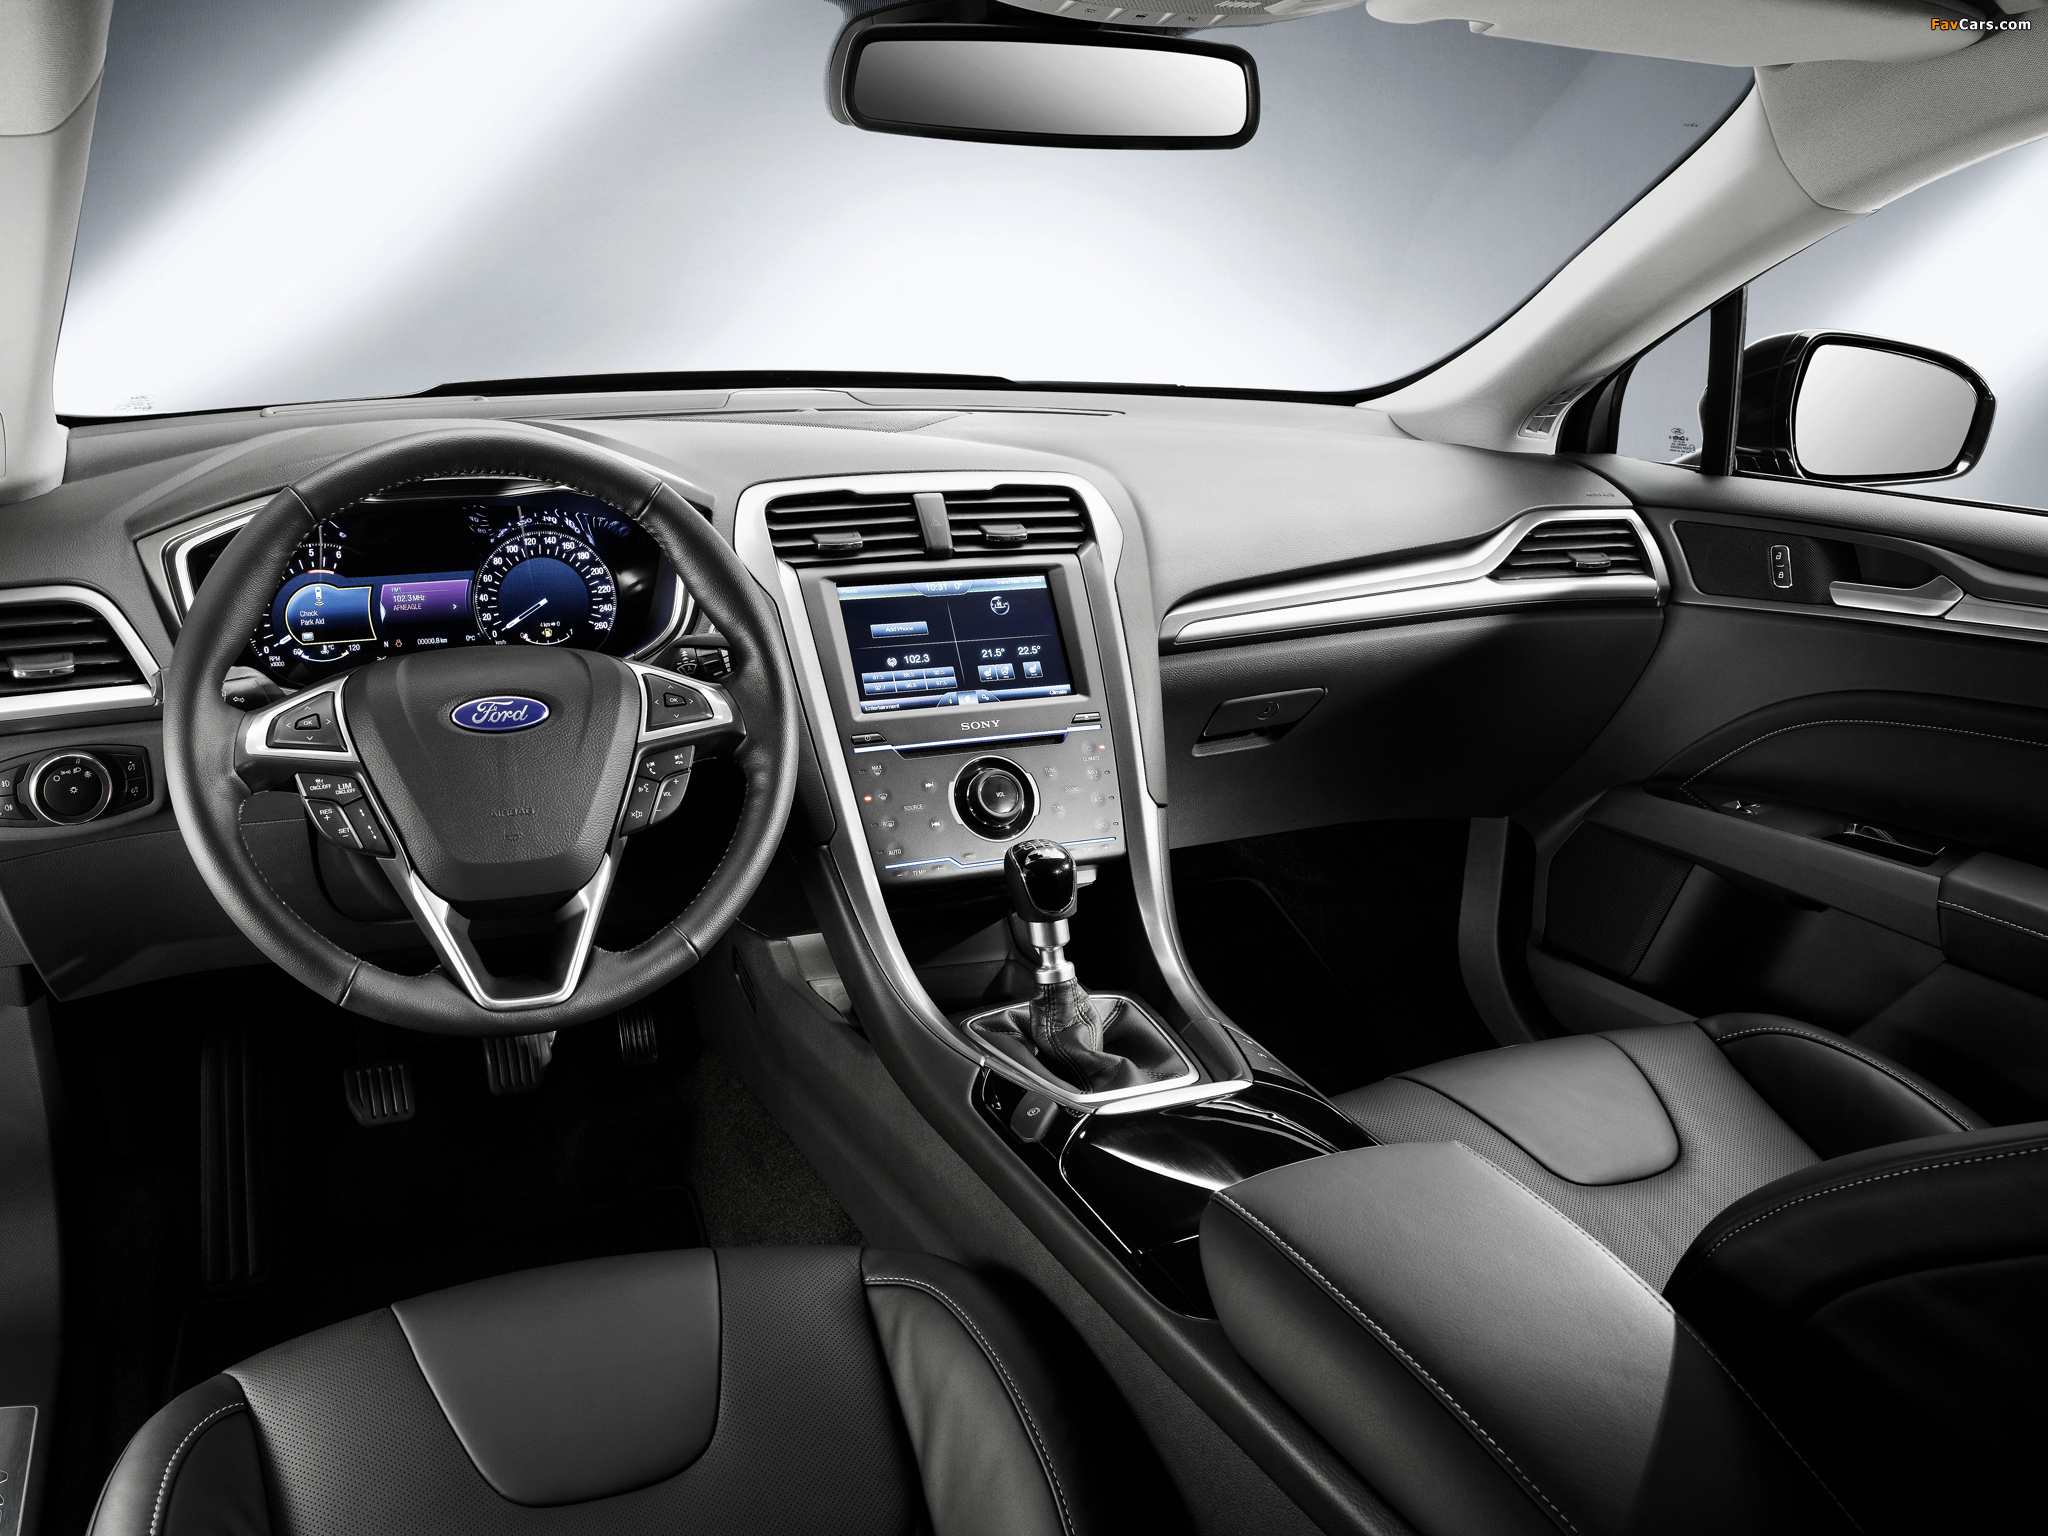 Форд Мондео 2015, 2.5 л., бензиновый двигатель, акпп, цвет ...